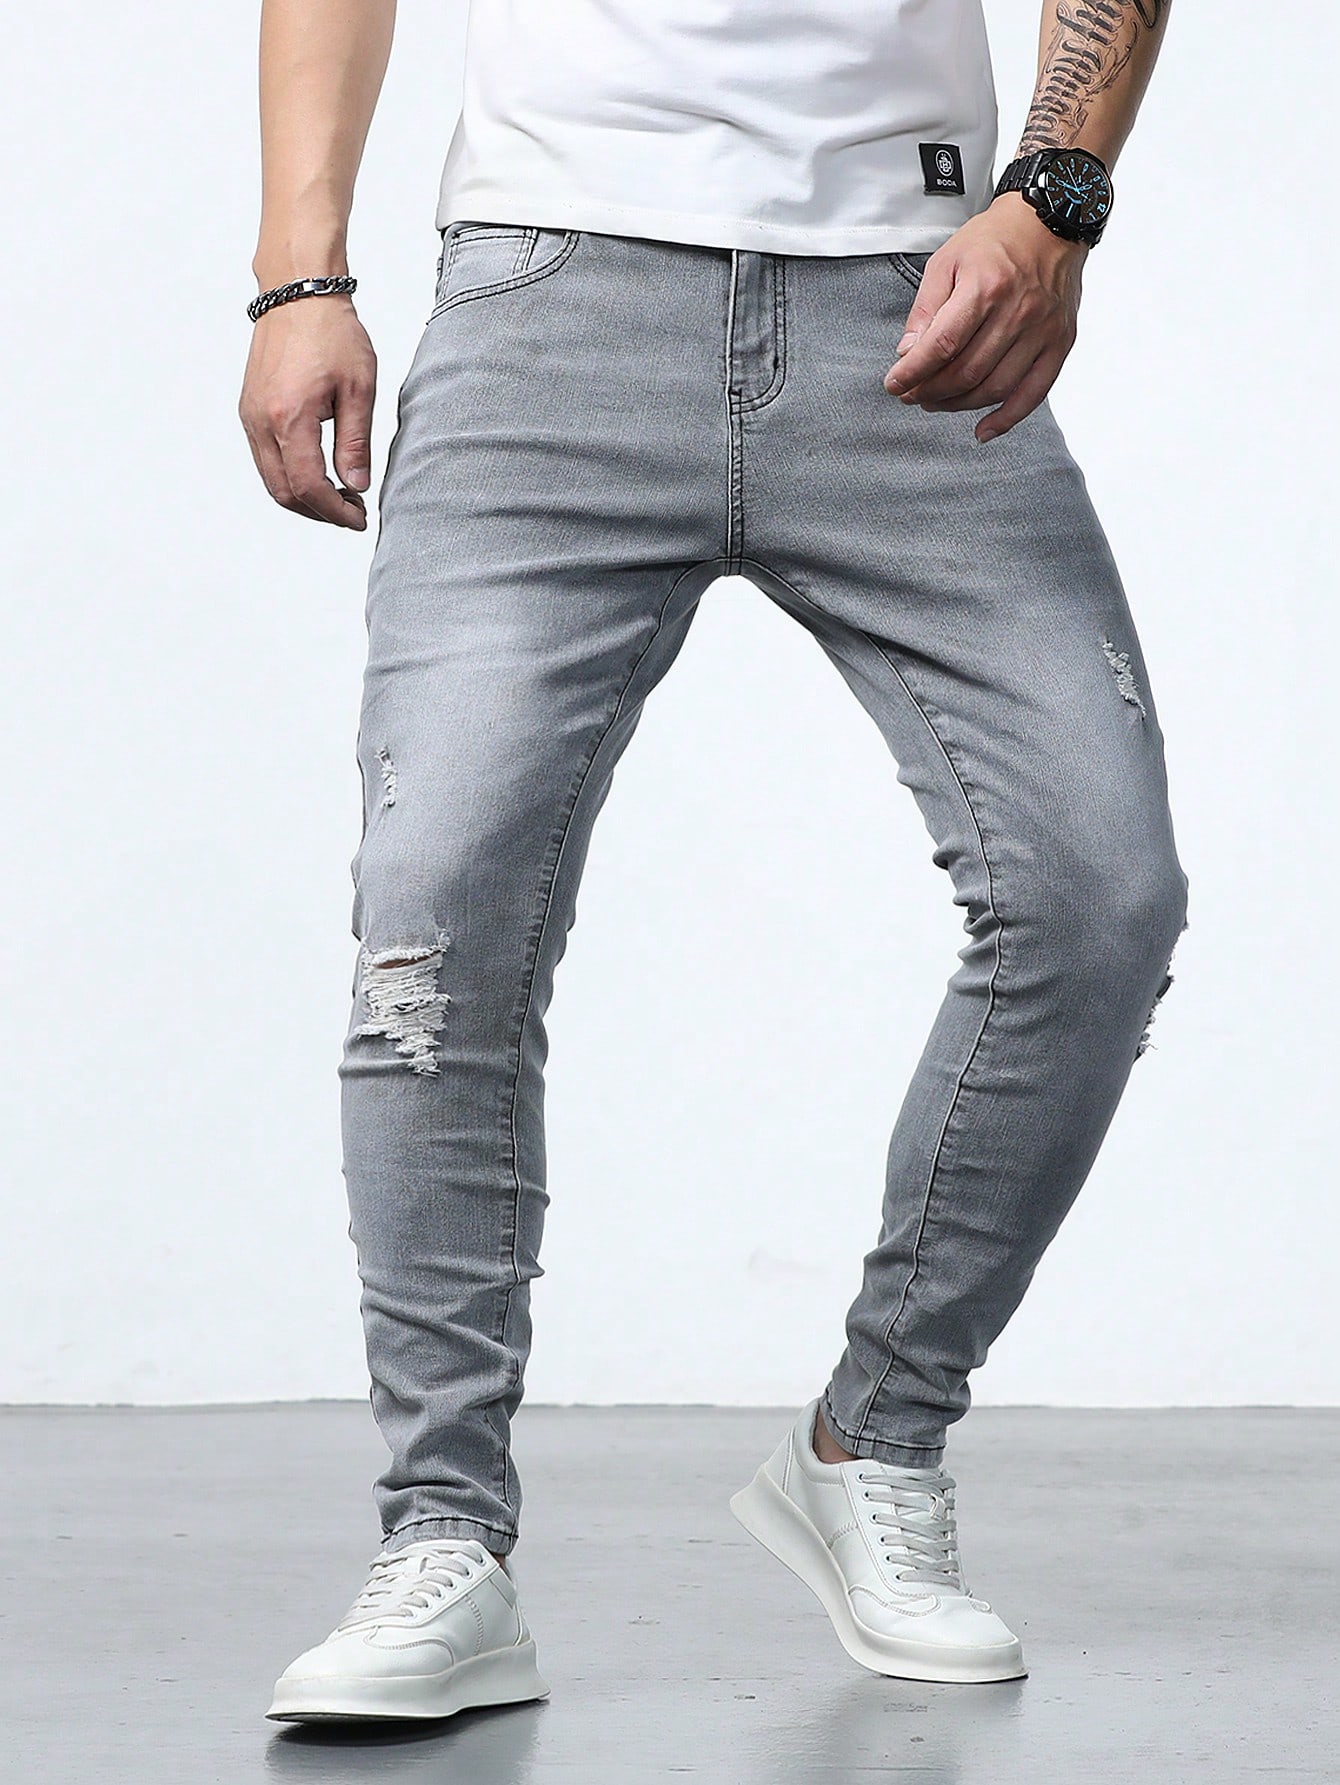 Мужские джинсы скинни с потертостями Manfinity Homme, серый джинсы concept club с потертостями 40 размер